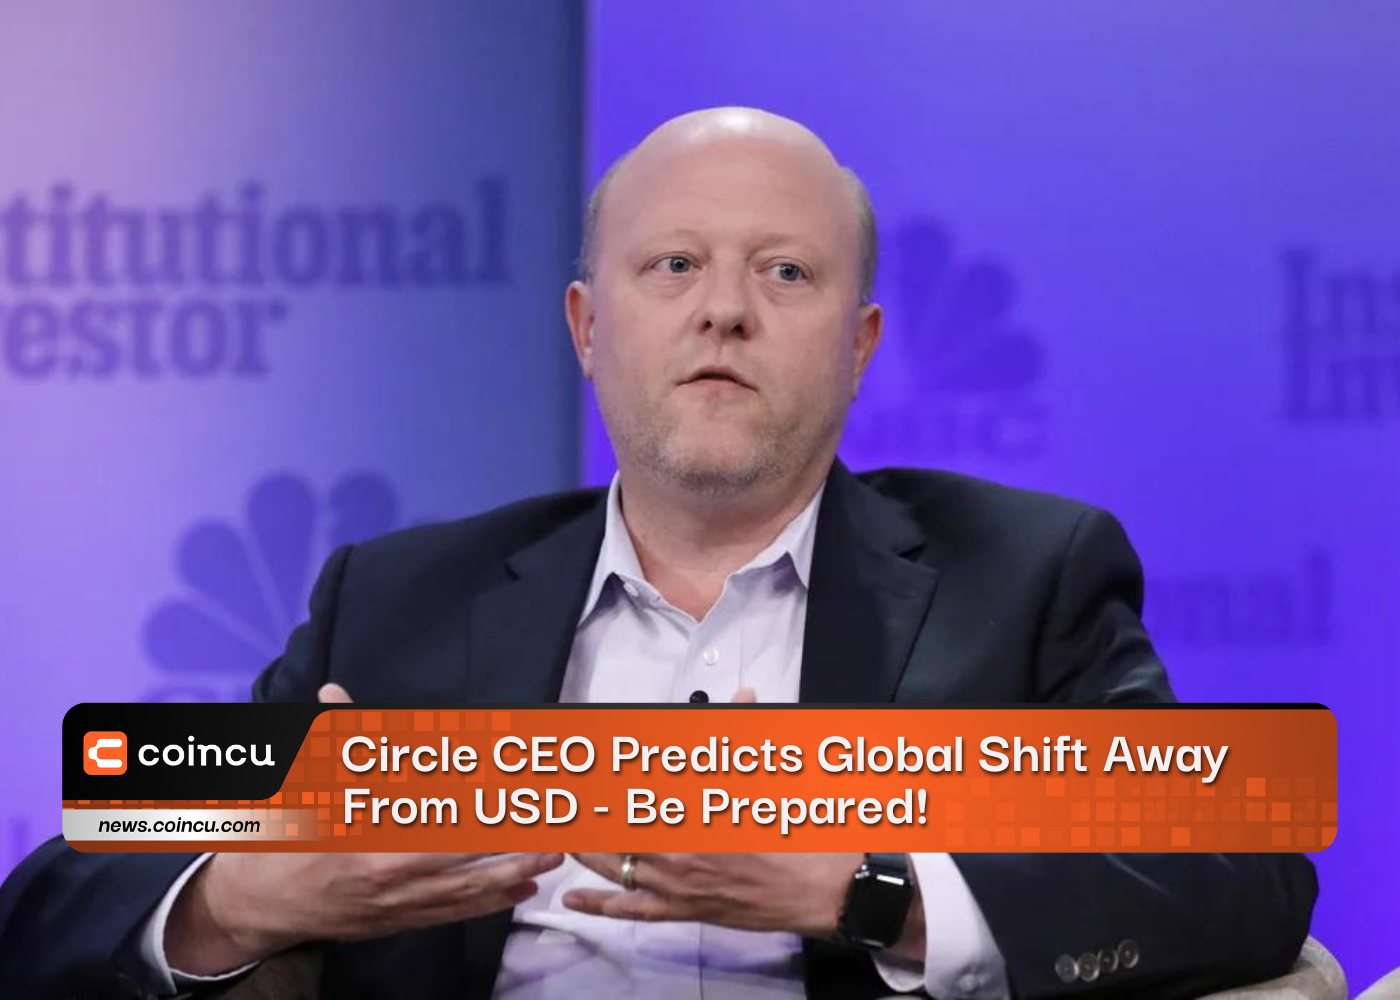 الرئيس التنفيذي لشركة Circle يتوقع التحول العالمي بعيدًا